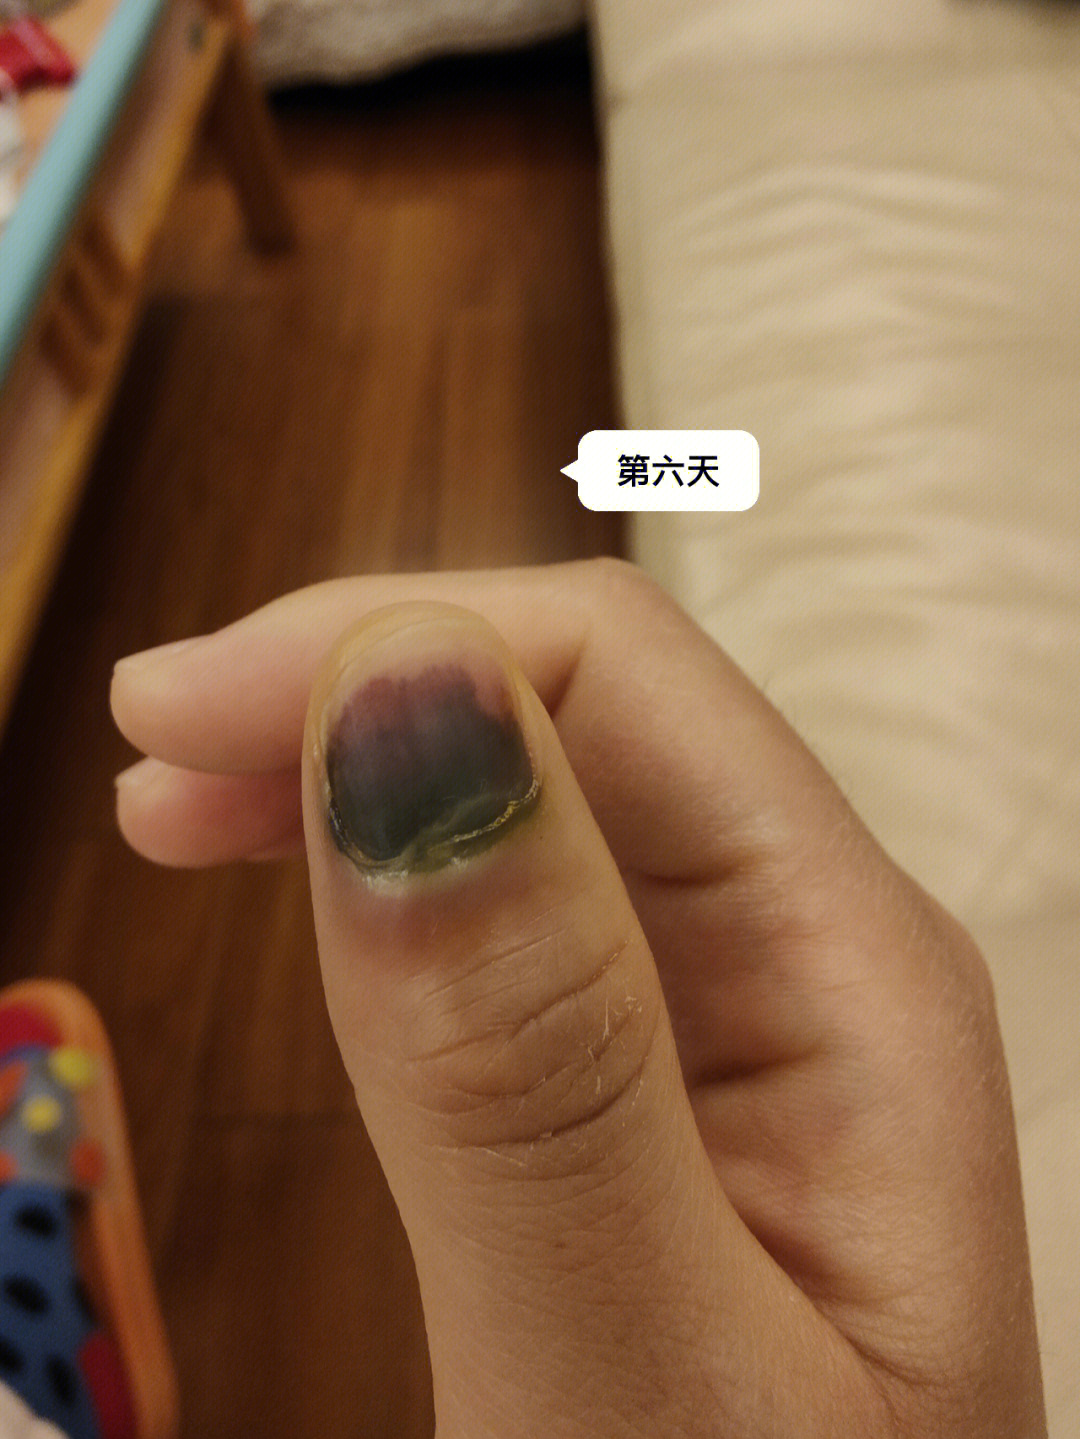 紫薇被夹手指图片